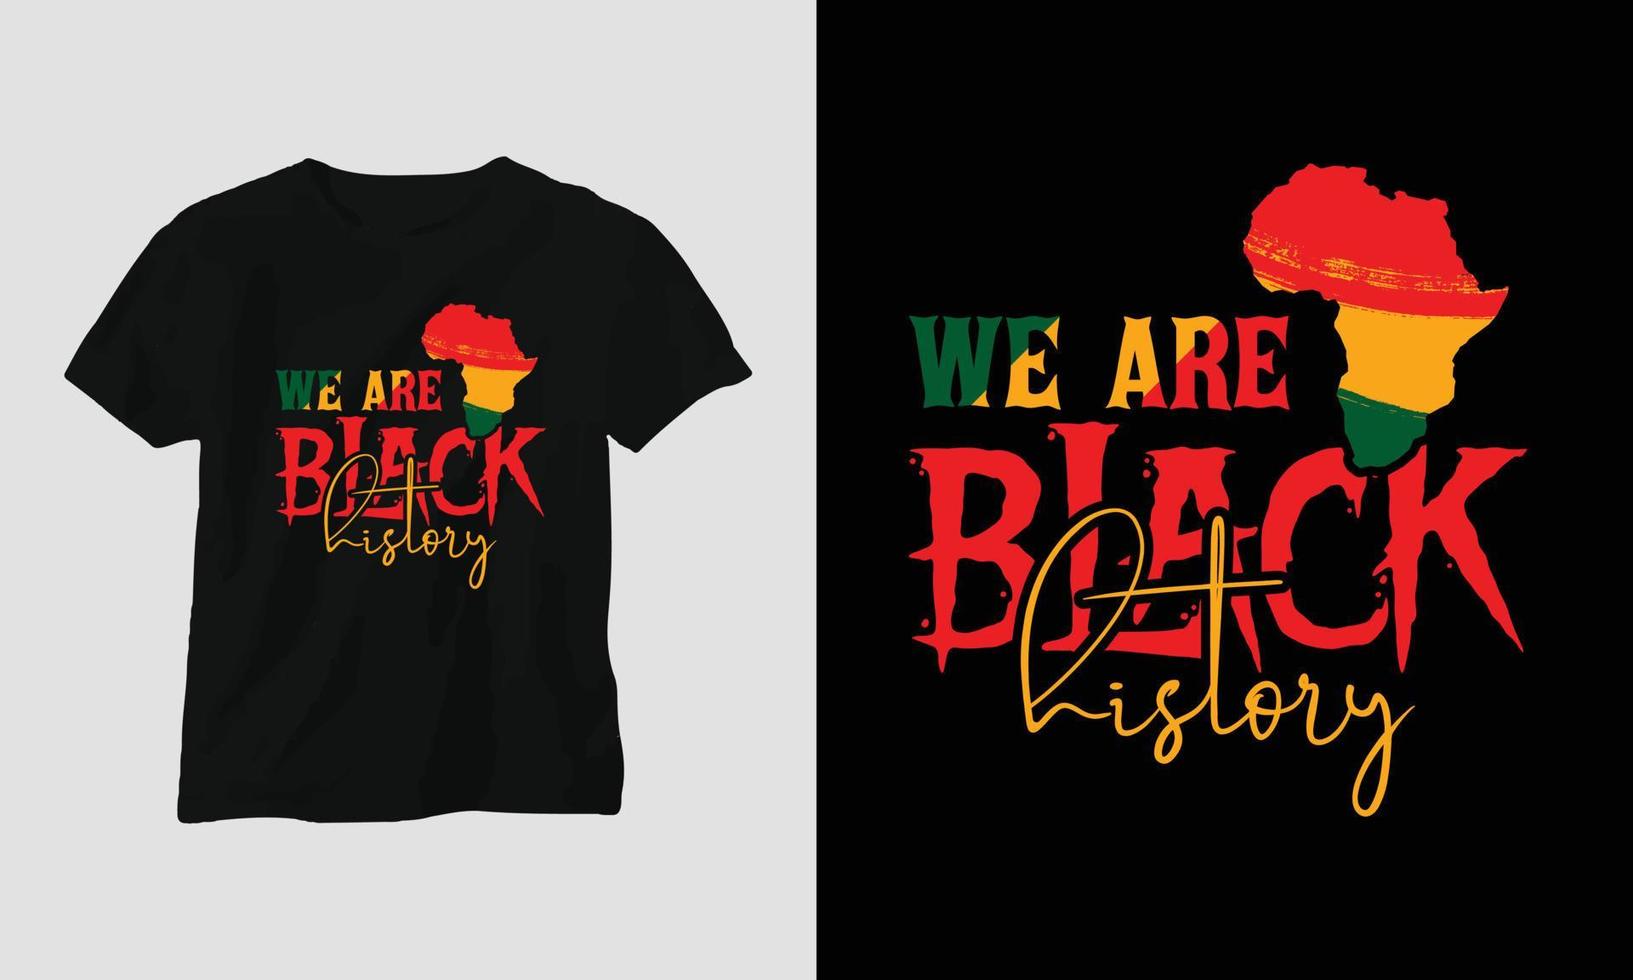 svart historia månad t-shirt och kläder design. vektor skriva ut, typografi, affisch, emblem, festival